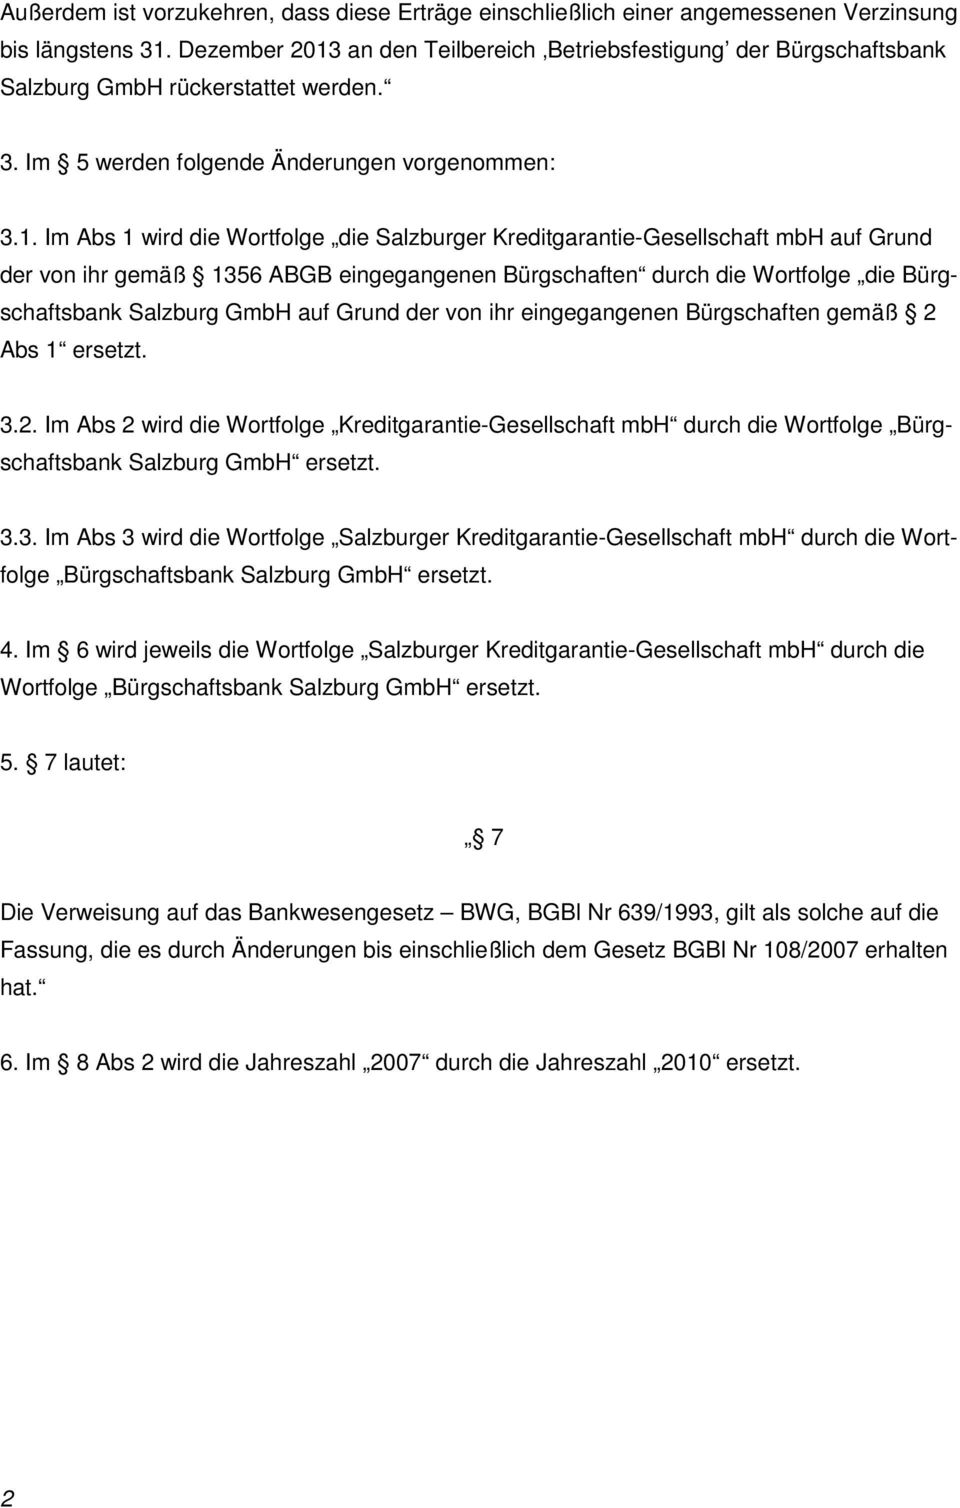 an den Teilbereich Betriebsfestigung der Bürgschaftsbank Salzburg GmbH rückerstattet werden. 3. Im 5 werden folgende Änderungen vorgenommen: 3.1.